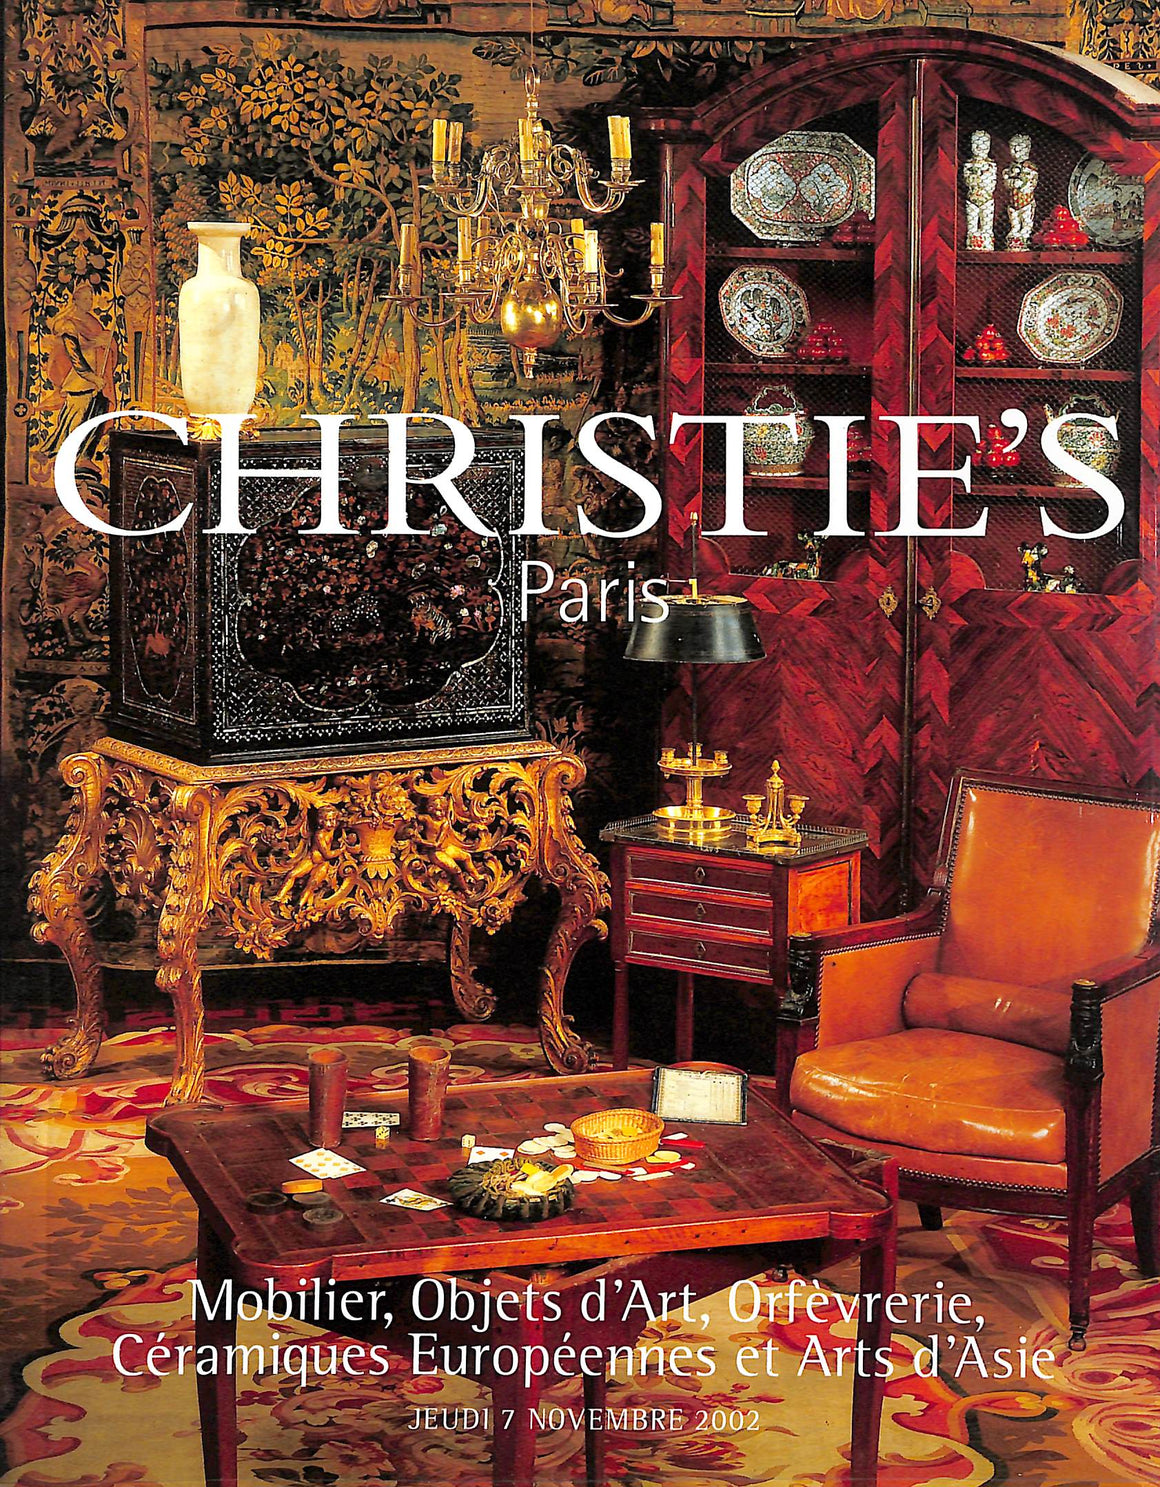 Mobilier, Objets D'Art, Orfevrerie, Ceramiques Europeennes Et Arts D'Asie Christie's 2002